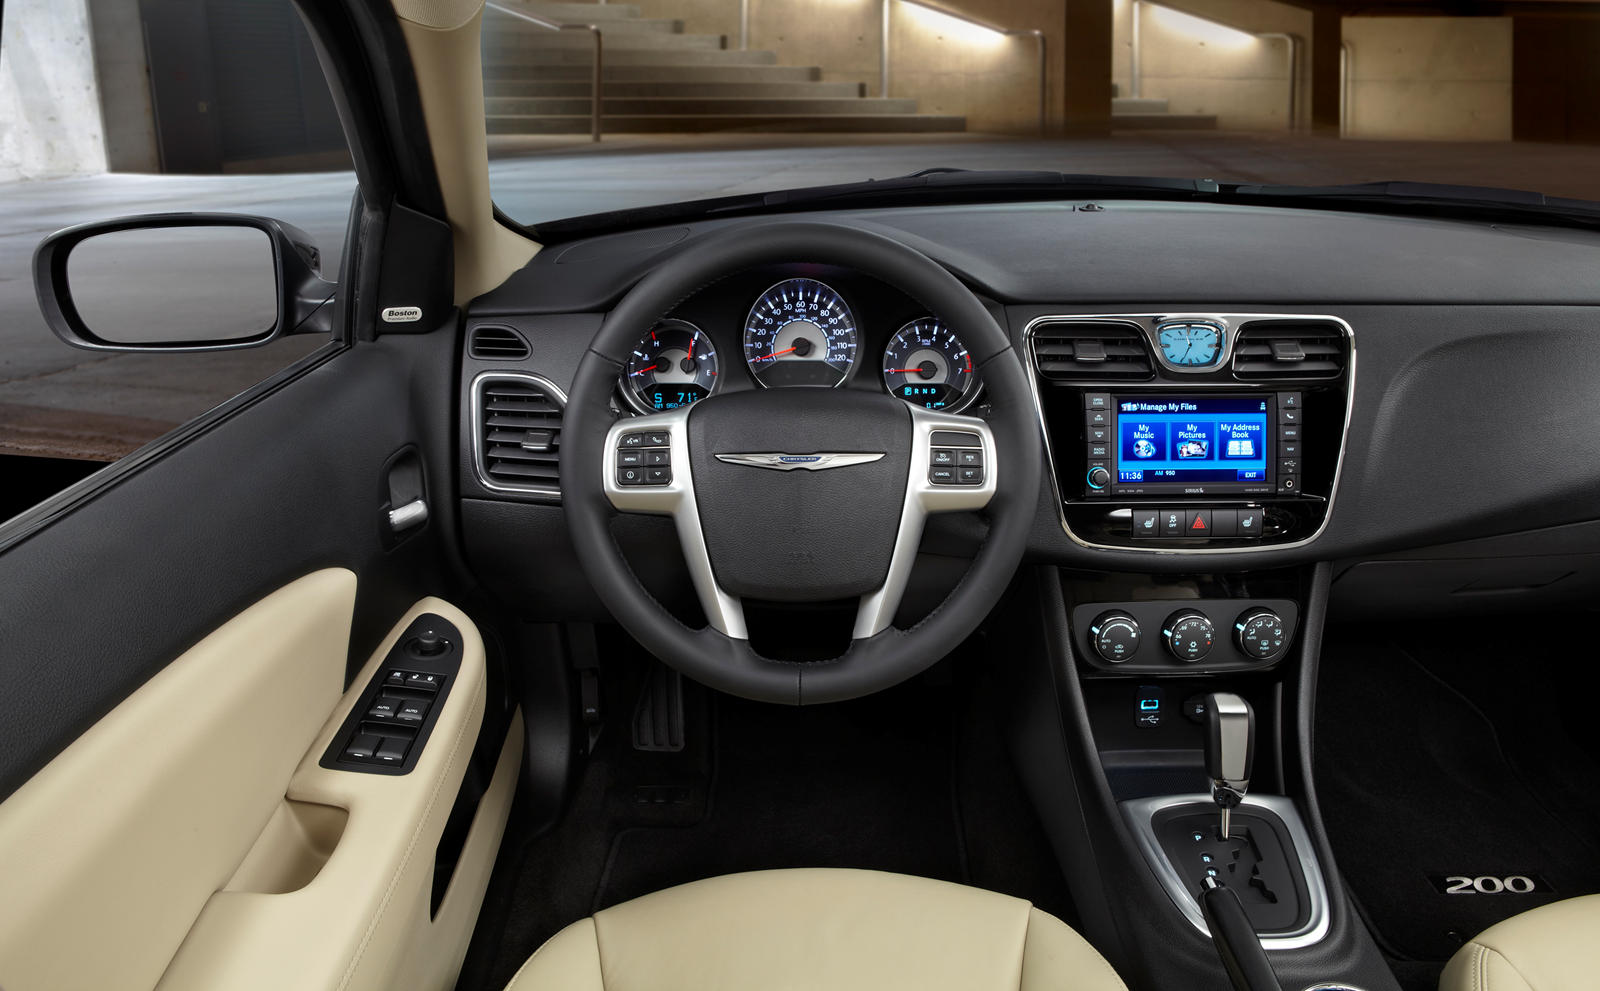 2011 Chrysler 200 Sedan Interior Photos | CarBuzz